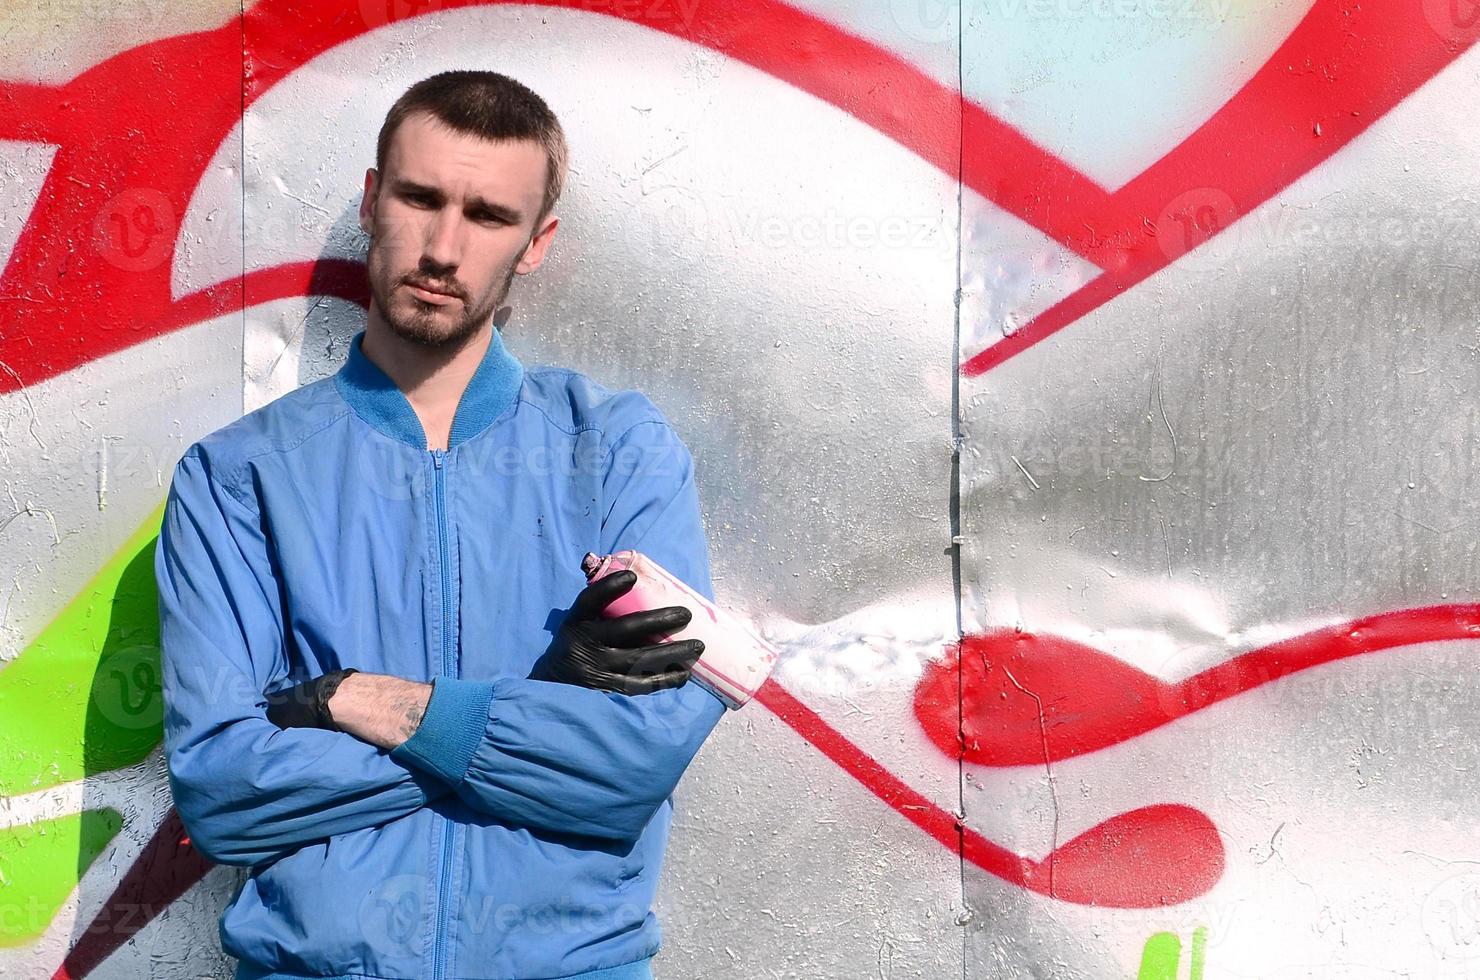 Der Graffiti-Künstler mit Spraydose posiert vor dem Hintergrund einer bunt bemalten Wand. Street-Art-Konzept foto